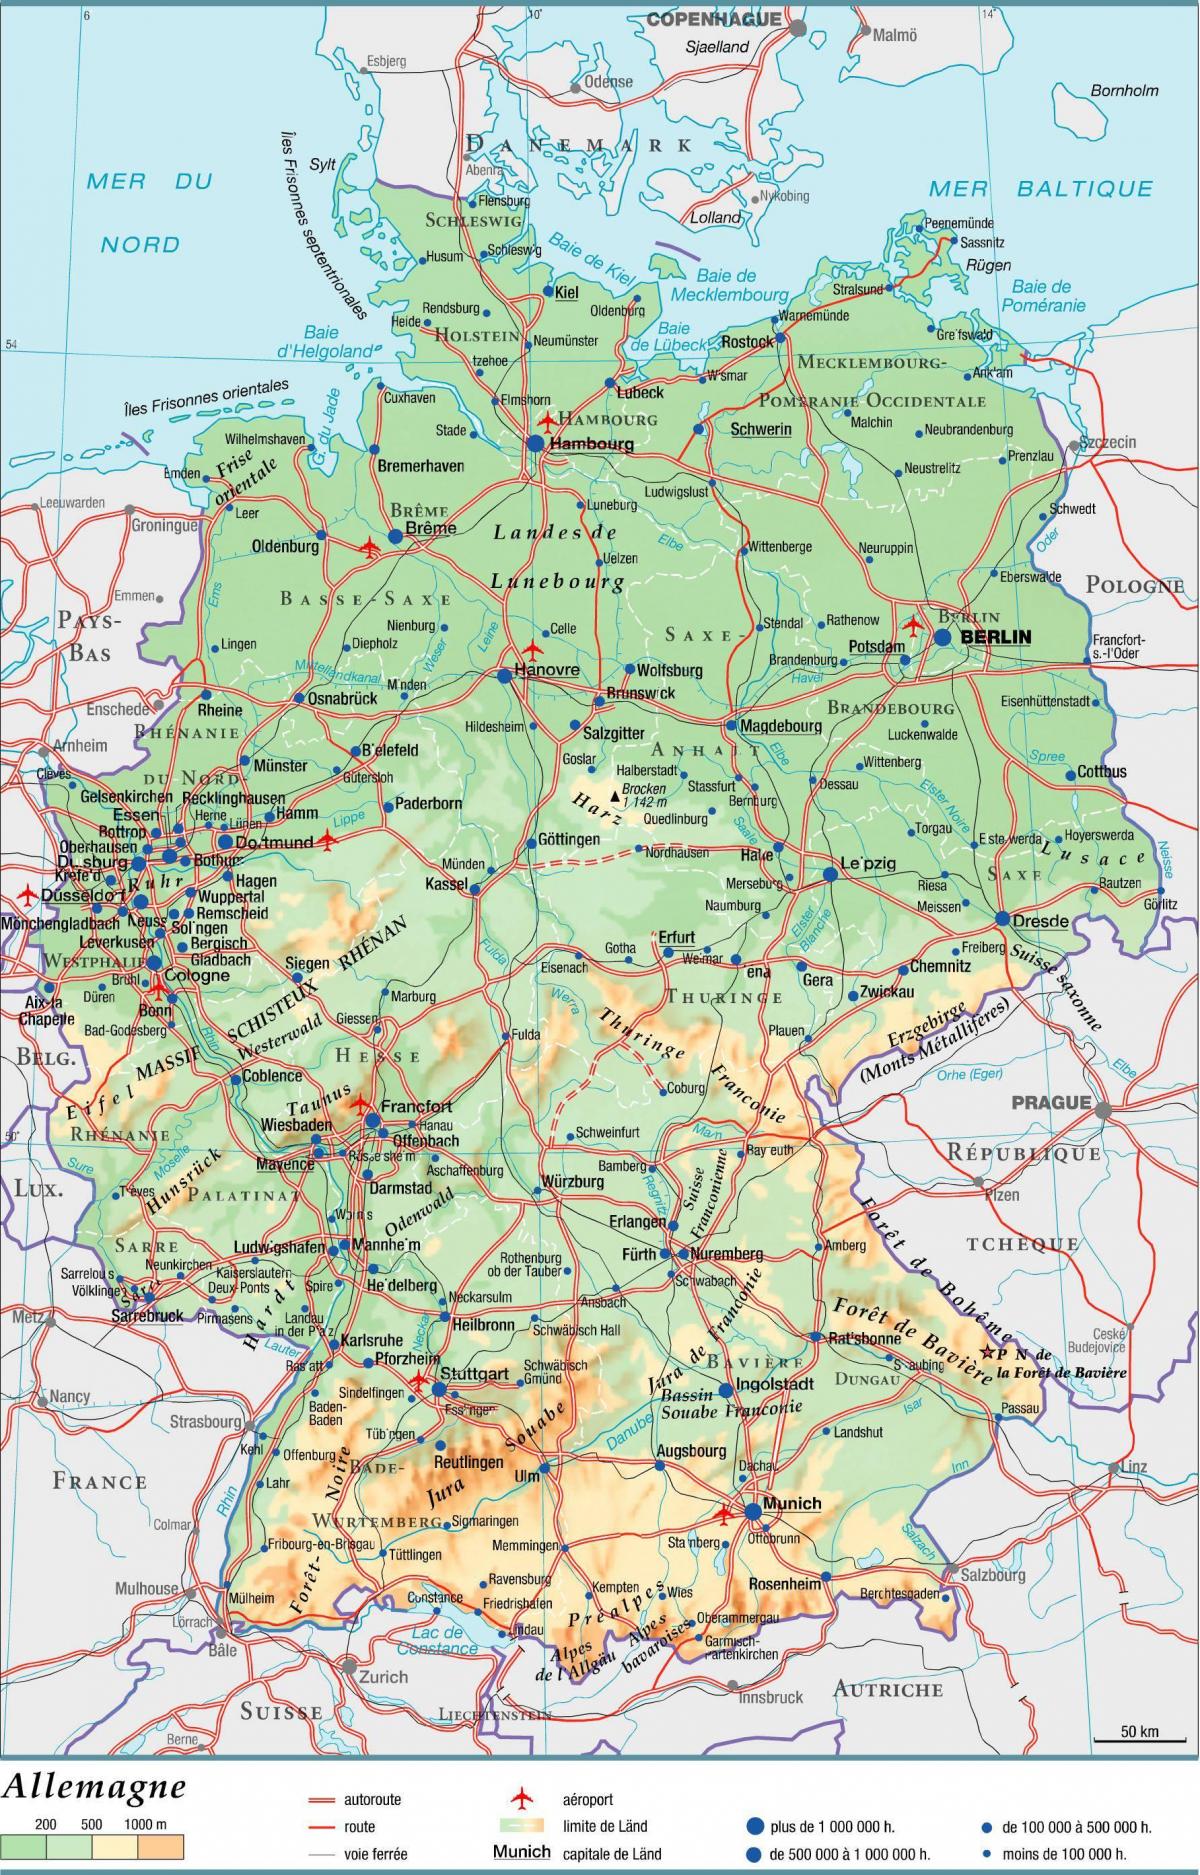 Grote kaart van Duitsland